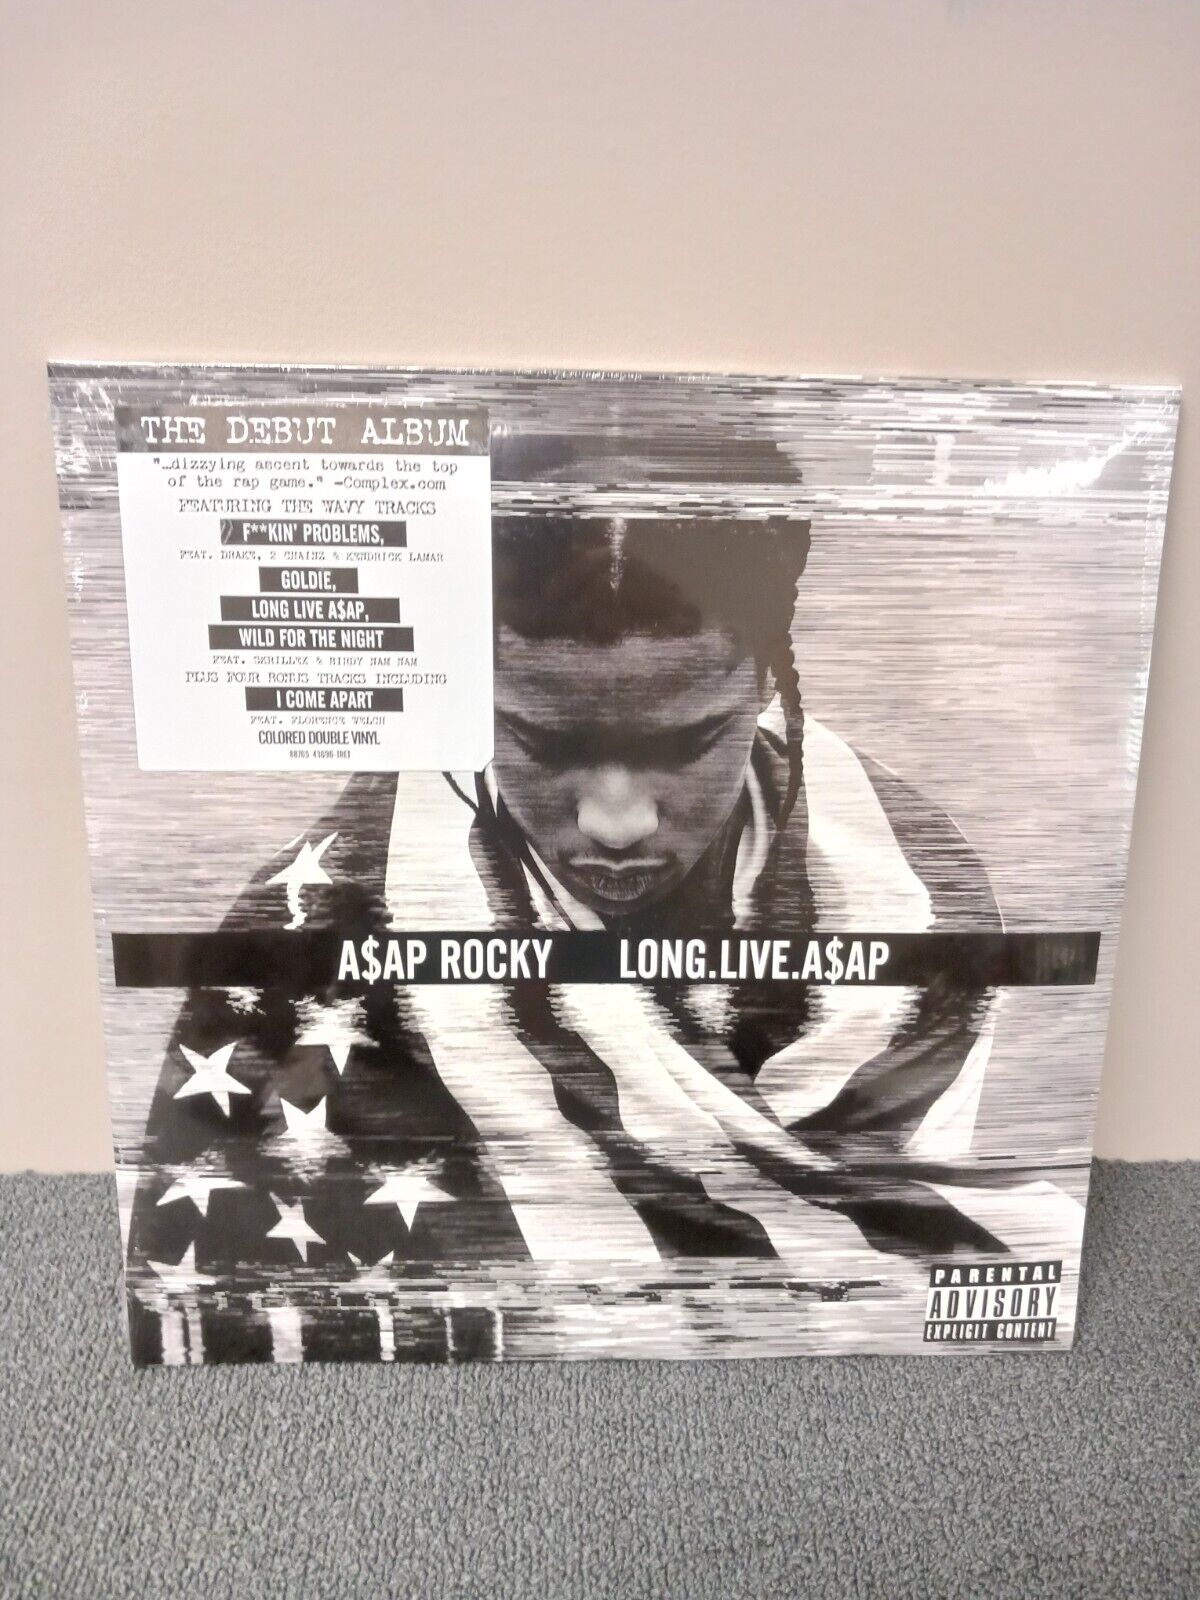 Long.live.a$ap by A$Ap Rocky (Record, 2013)